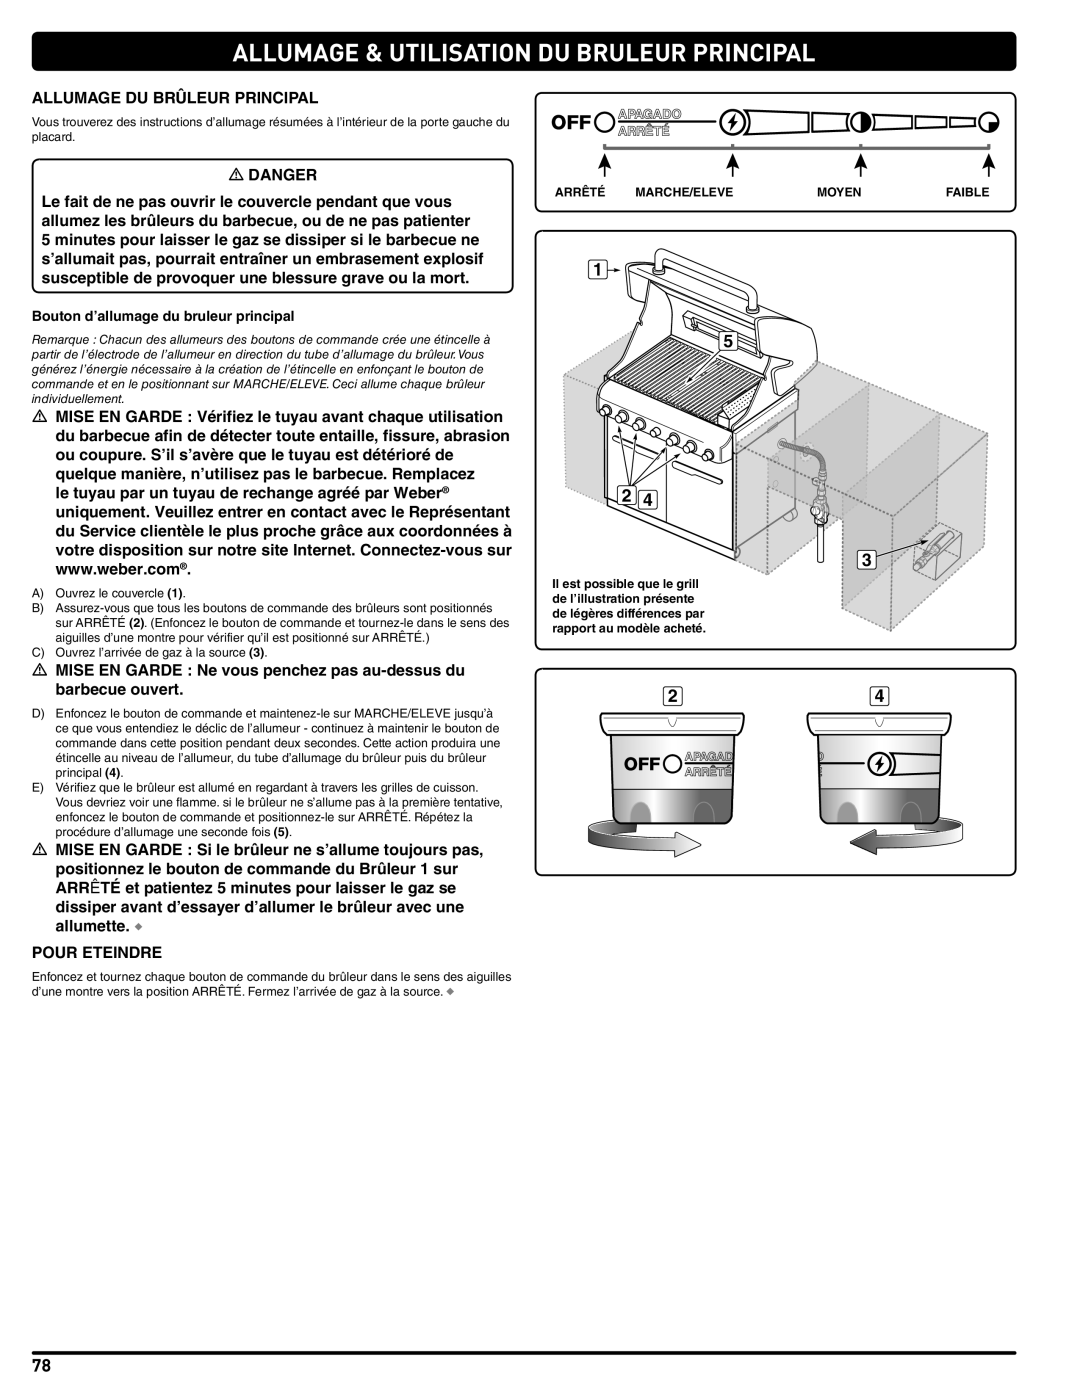 Weber 56576 manual Allumage & Utilisation Du Bruleur Principal, Bouton d’allumage du bruleur principal 